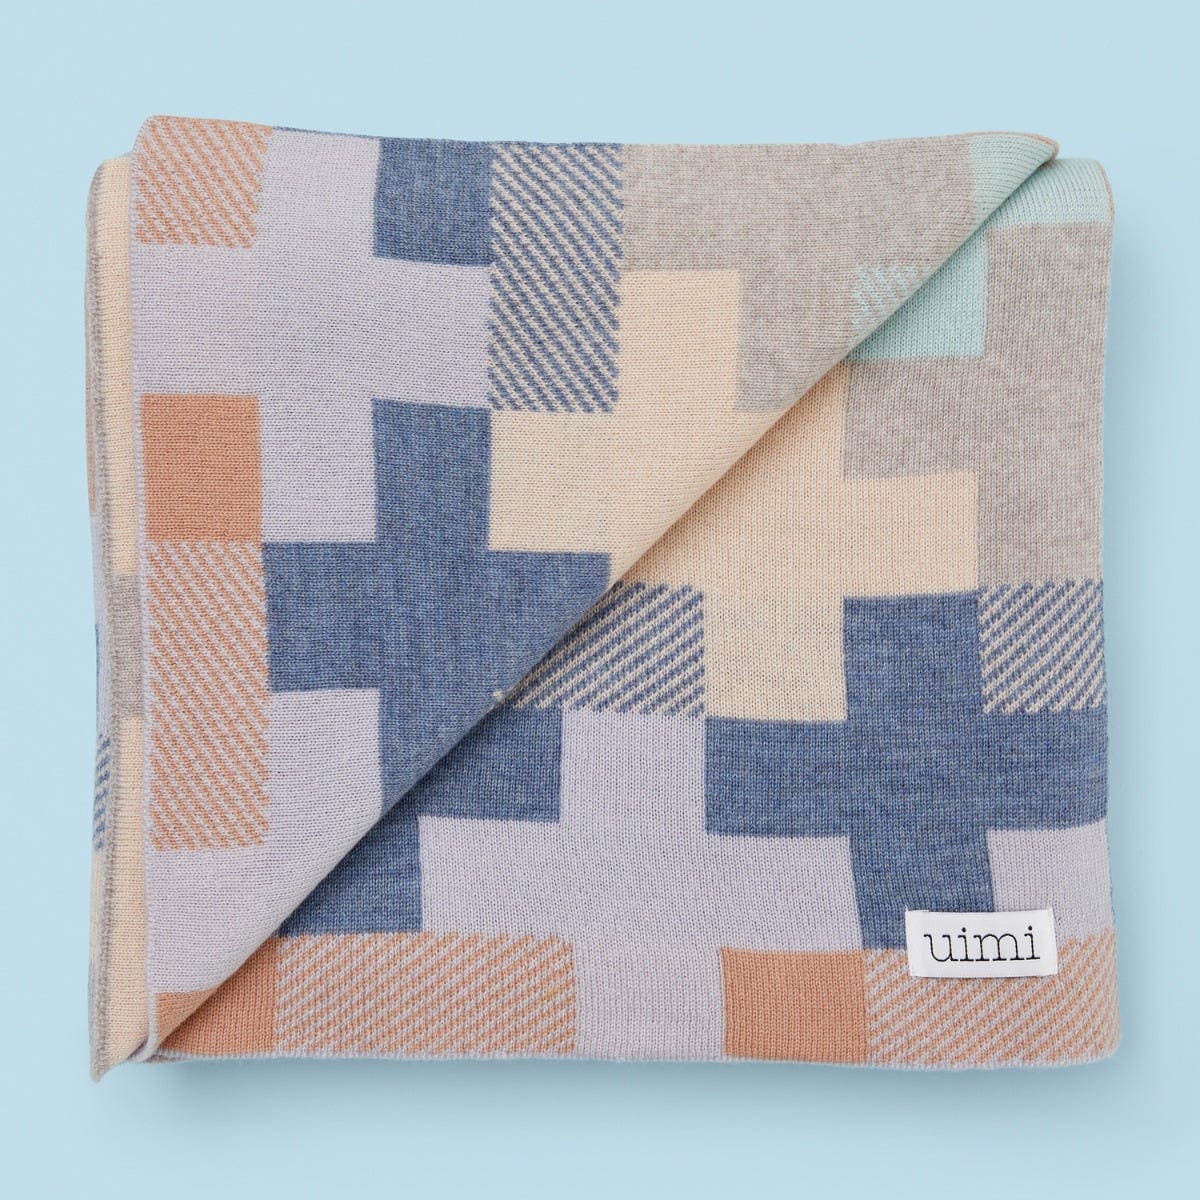 Uimi Max Double Sided Cross Pattern Cot Blanket in Merino Wool - Tea